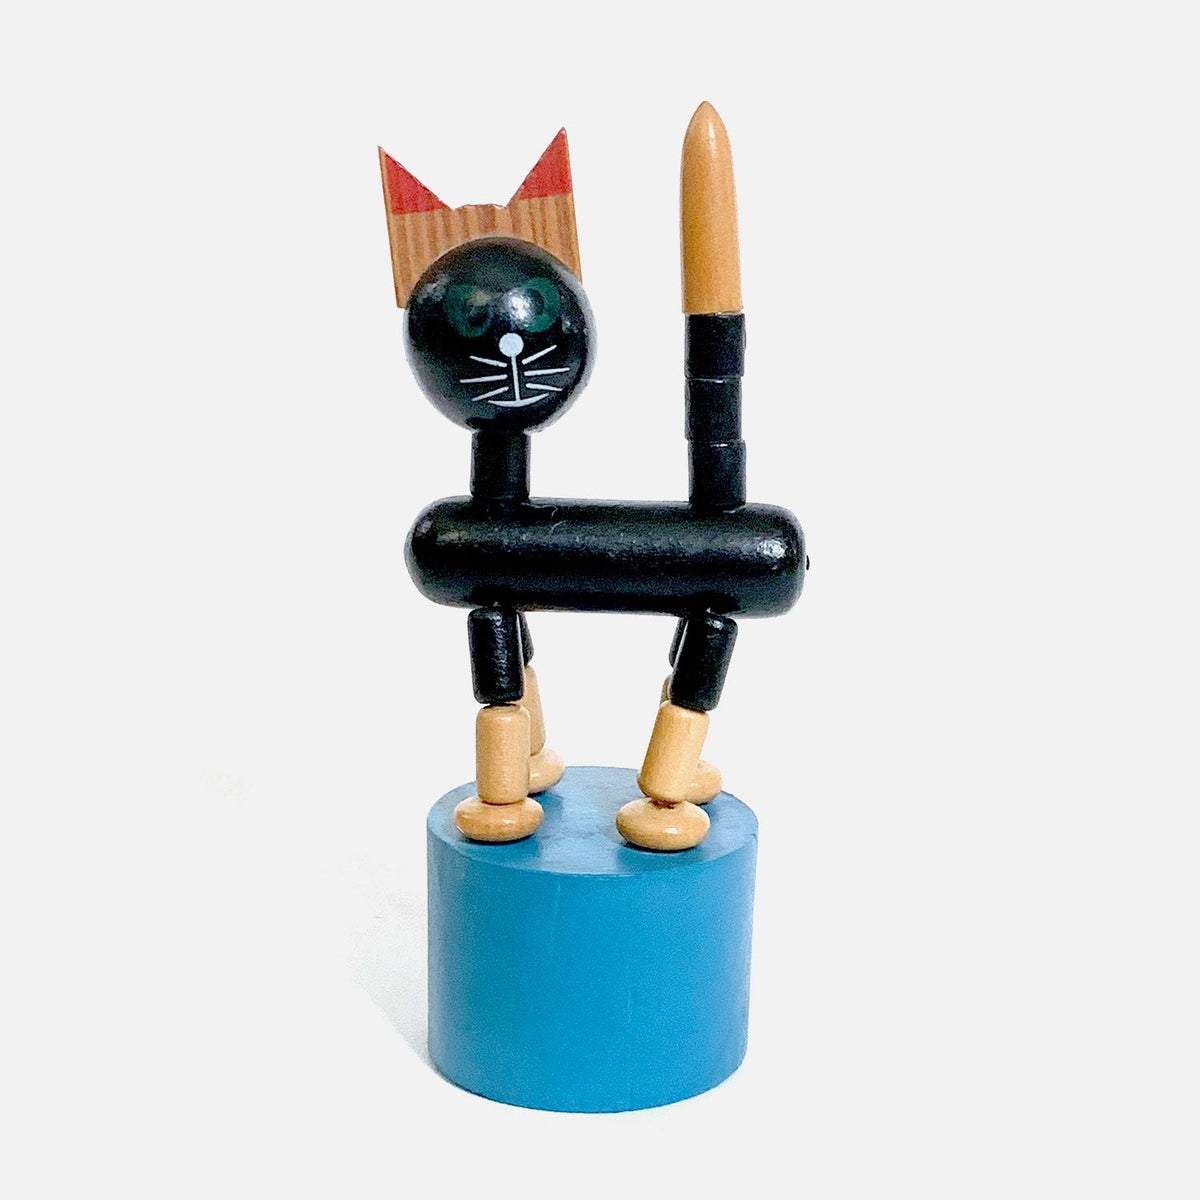 Vintage Wooden Cat Push Puppet